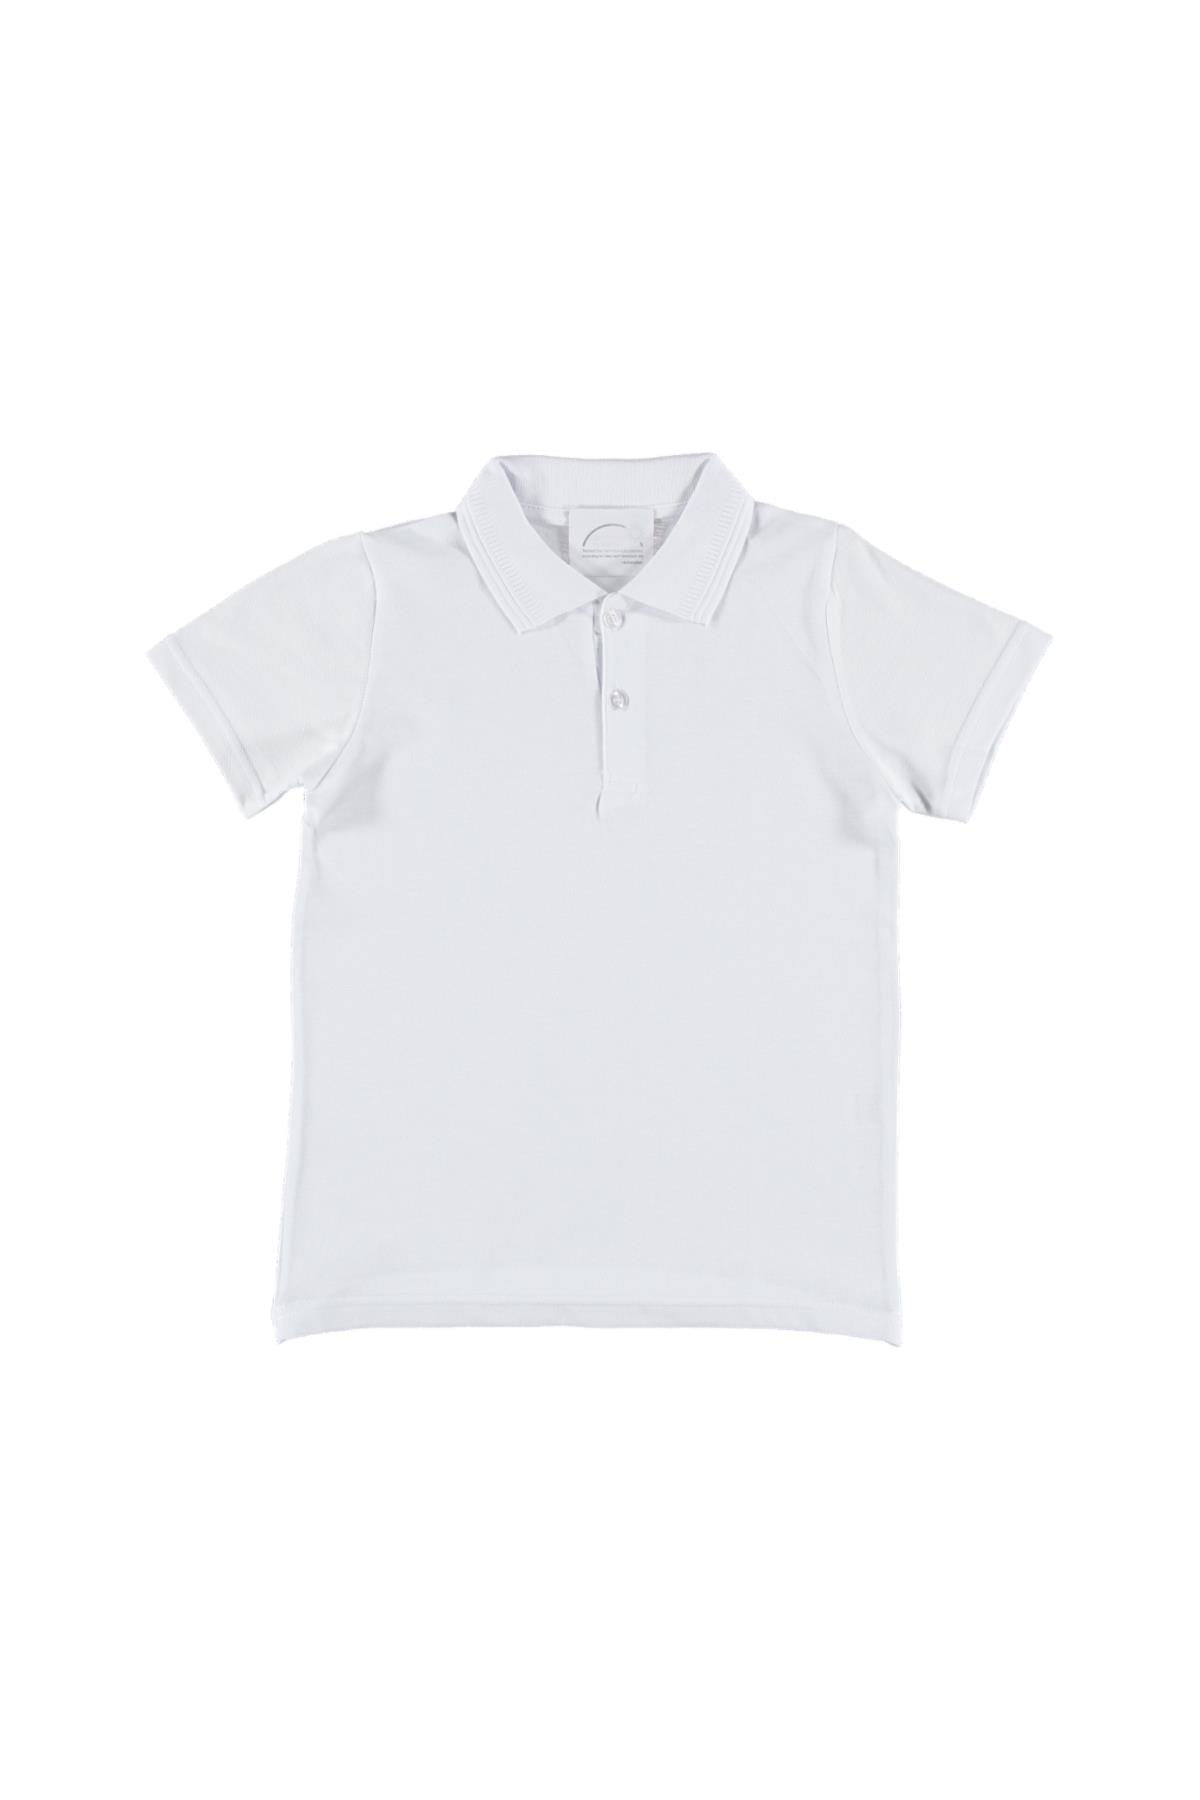 Erkek Çocuk Polo Yaka Düz Beyaz Tişört